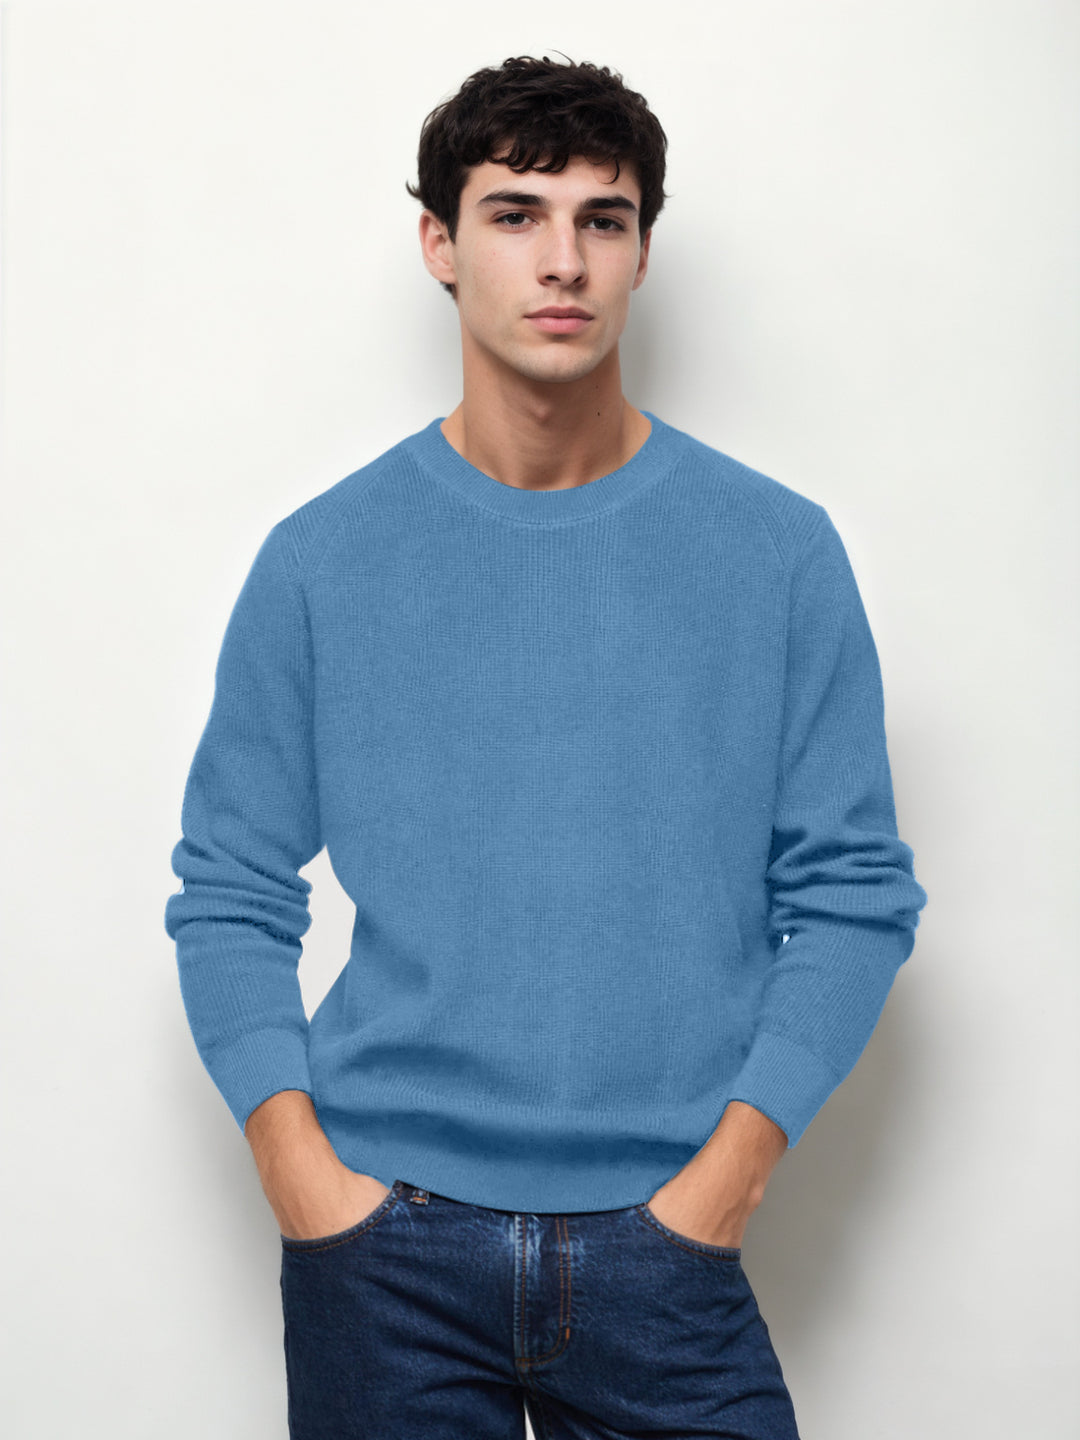 Hemsters Sky Blue Knitted Full Sleevs Sweatshirt For Men